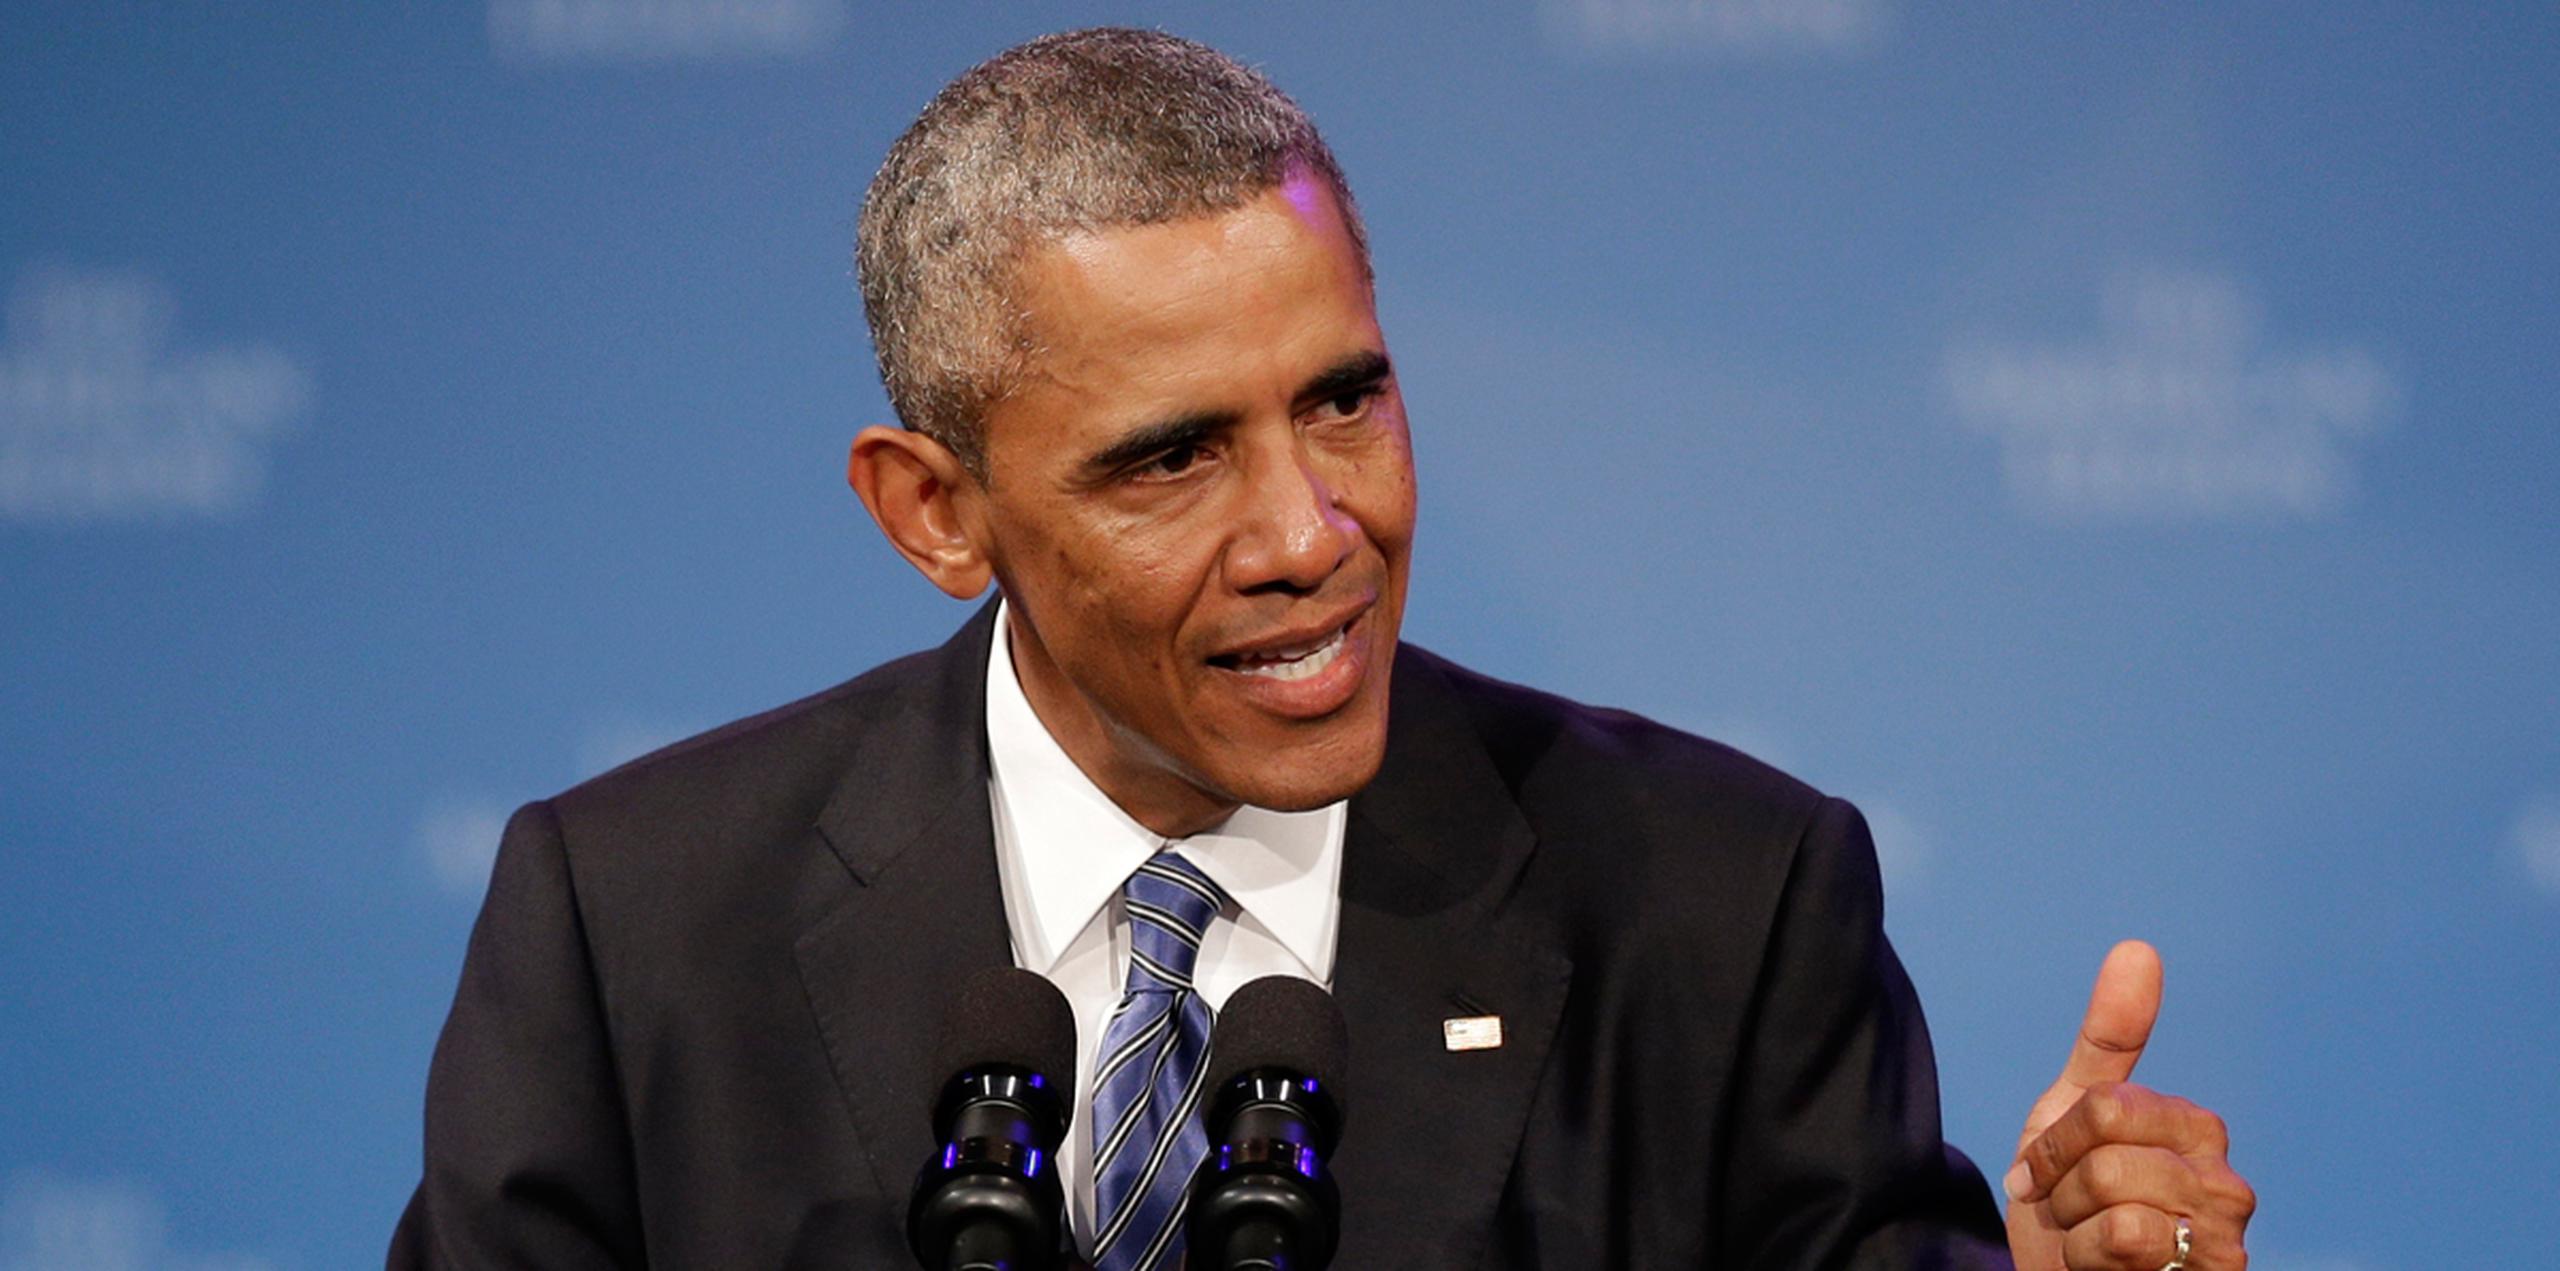 En enero, Obama ofreció su último discurso como presidente también en Chicago. (AP)